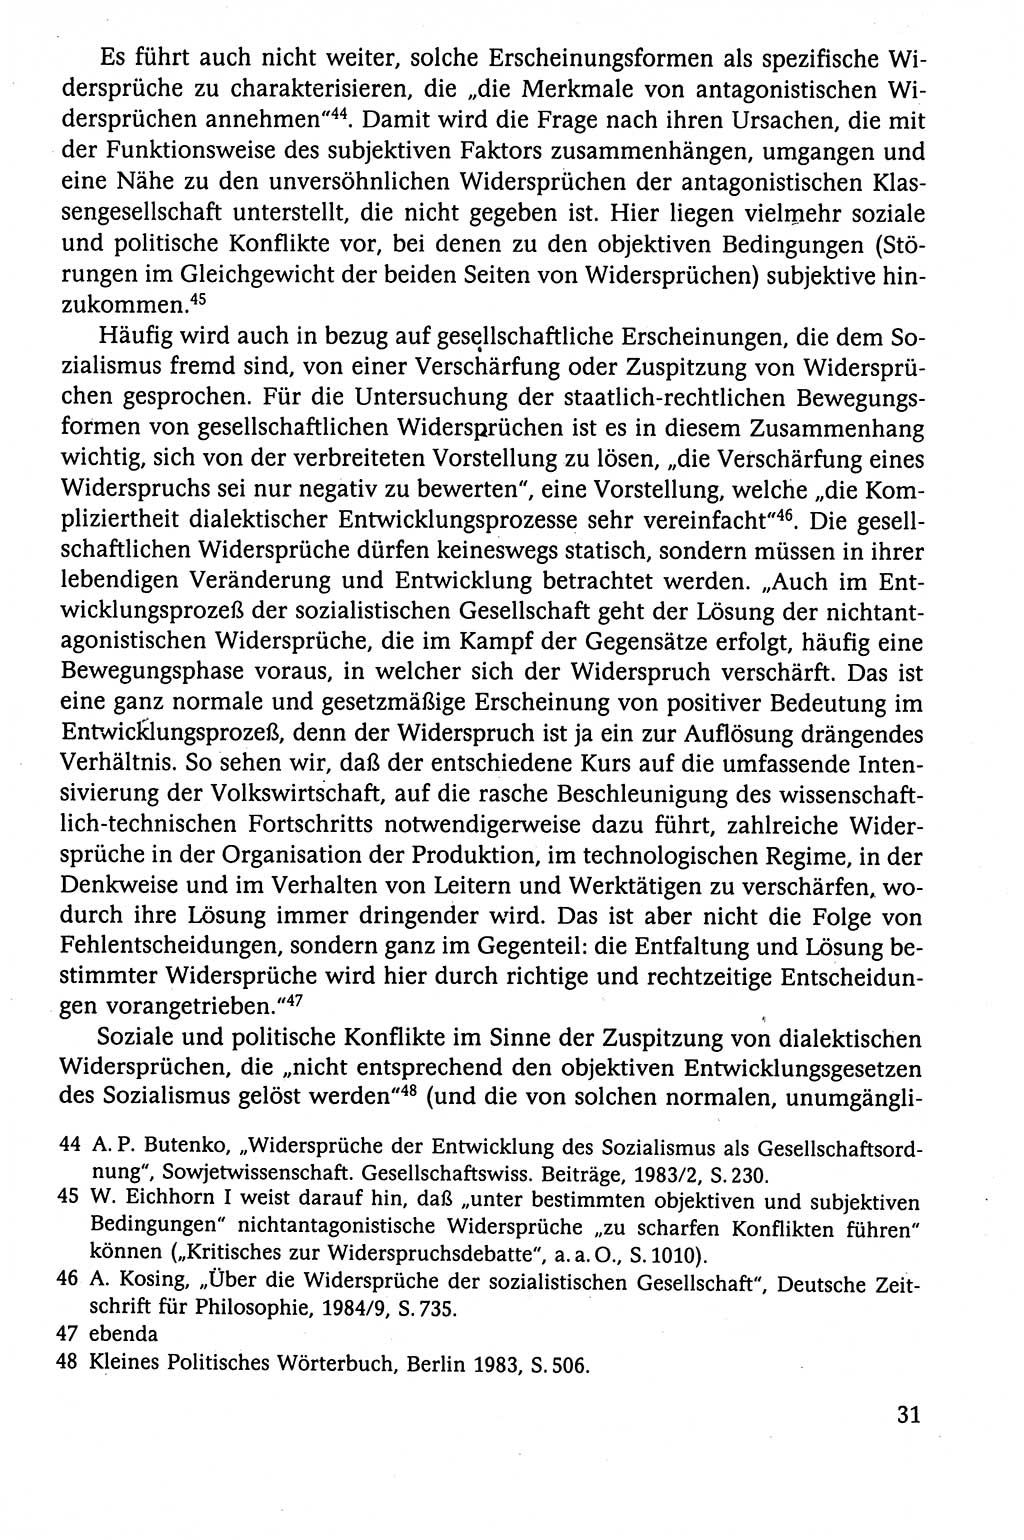 Der Staat im politischen System der DDR (Deutsche Demokratische Republik) 1986, Seite 31 (St. pol. Sys. DDR 1986, S. 31)